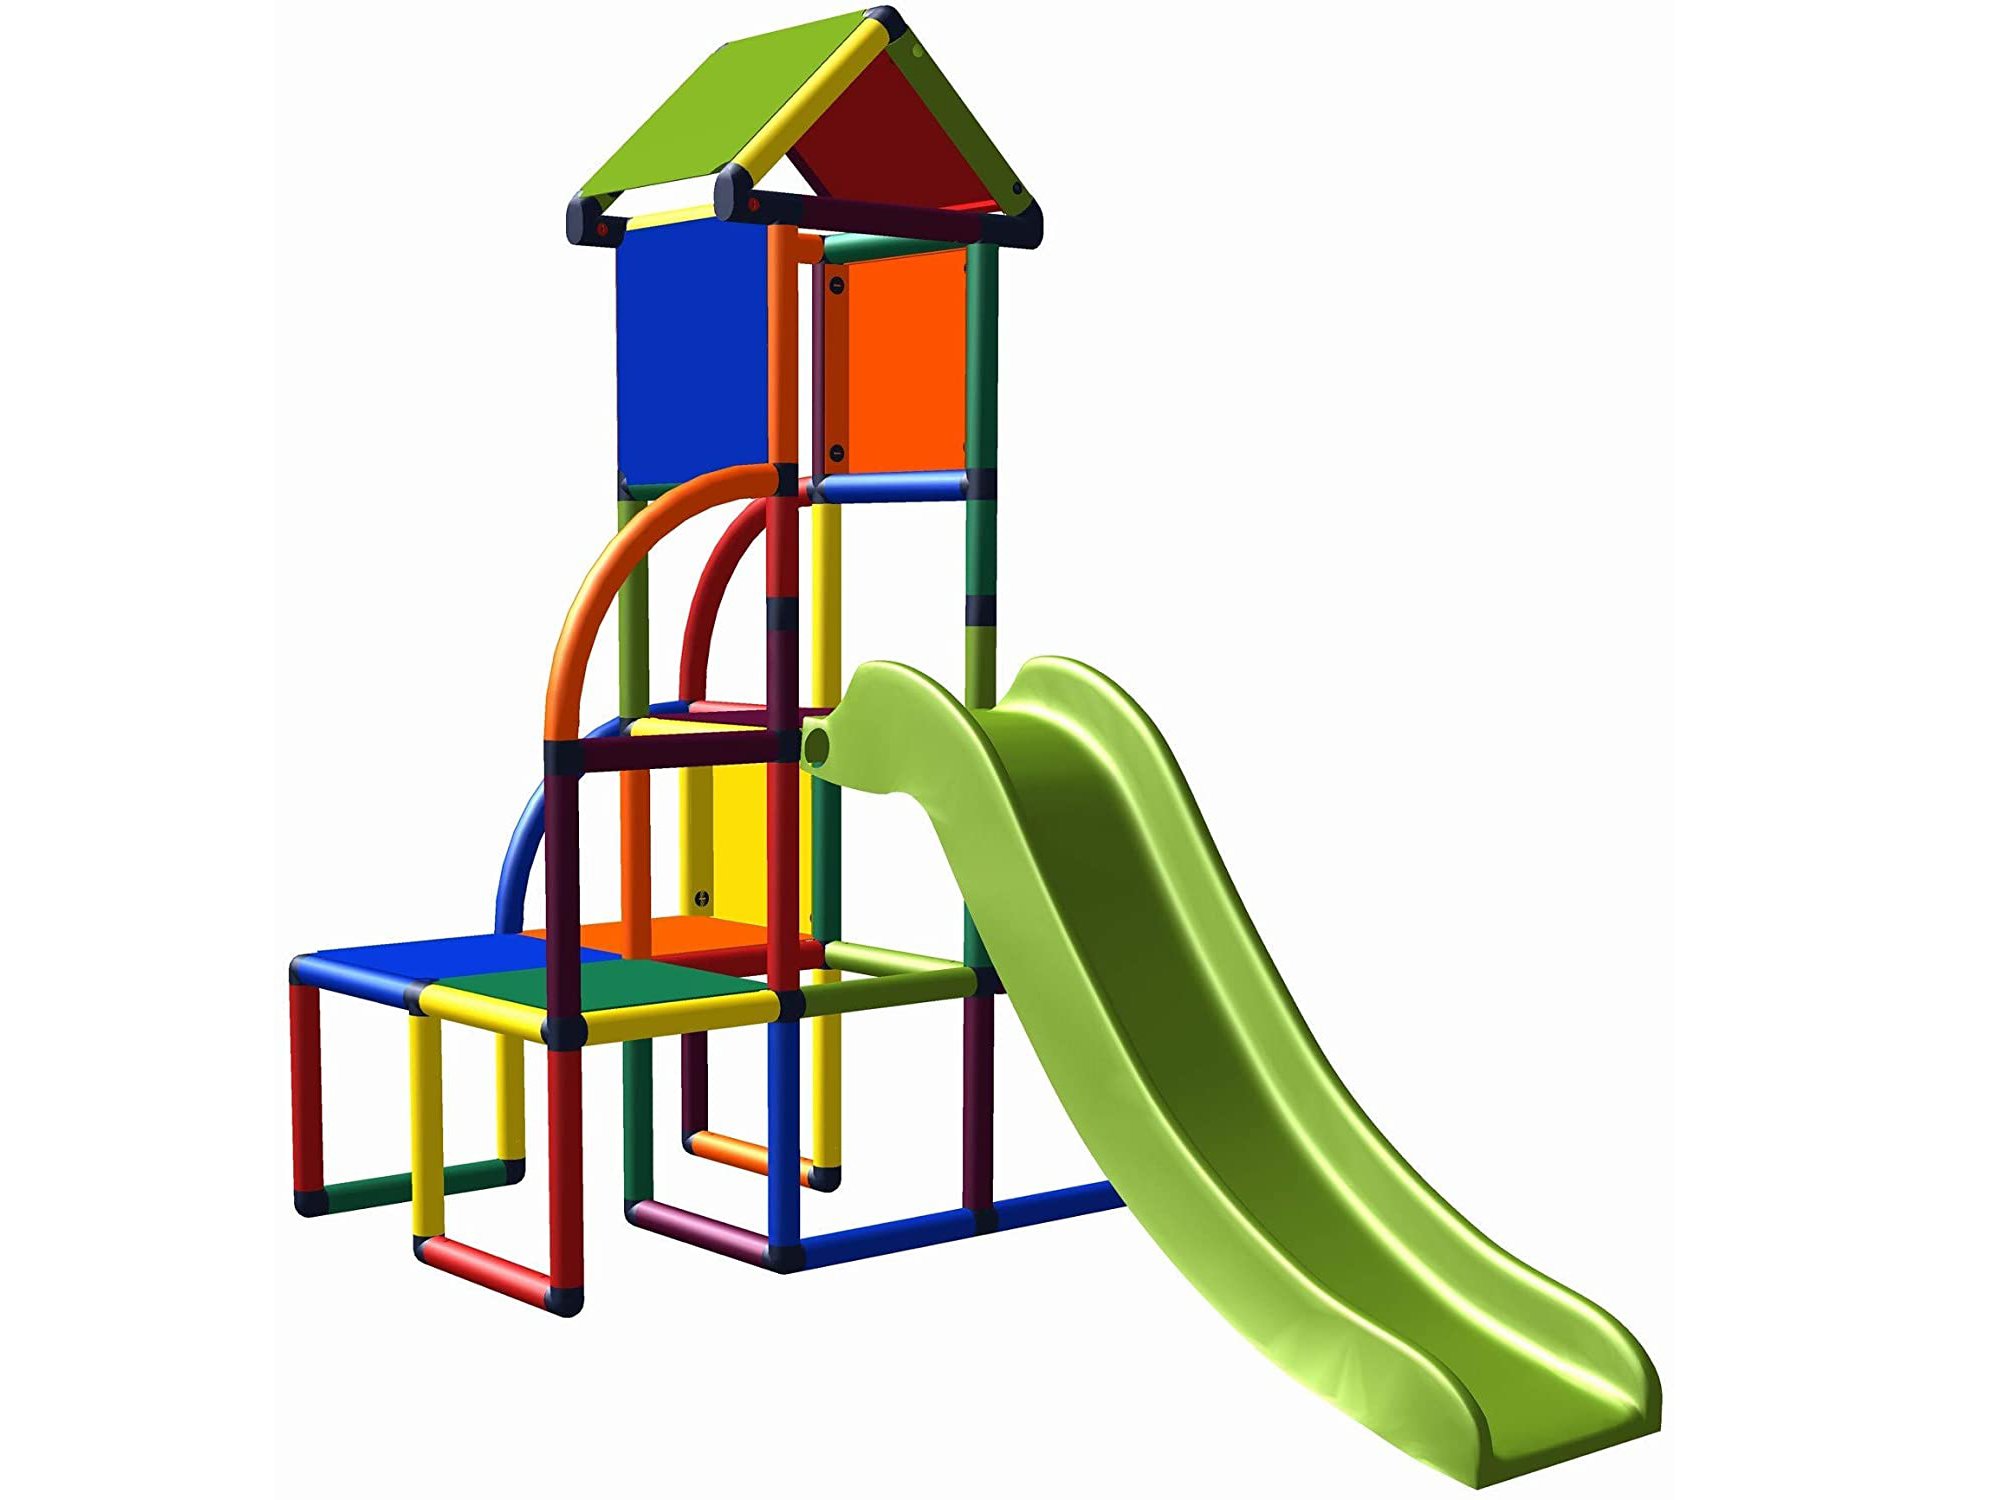 Moveandstic Spielhaus Kleinkind Baukasten 6451 Kletterturm mit Babyrutsche bunt 